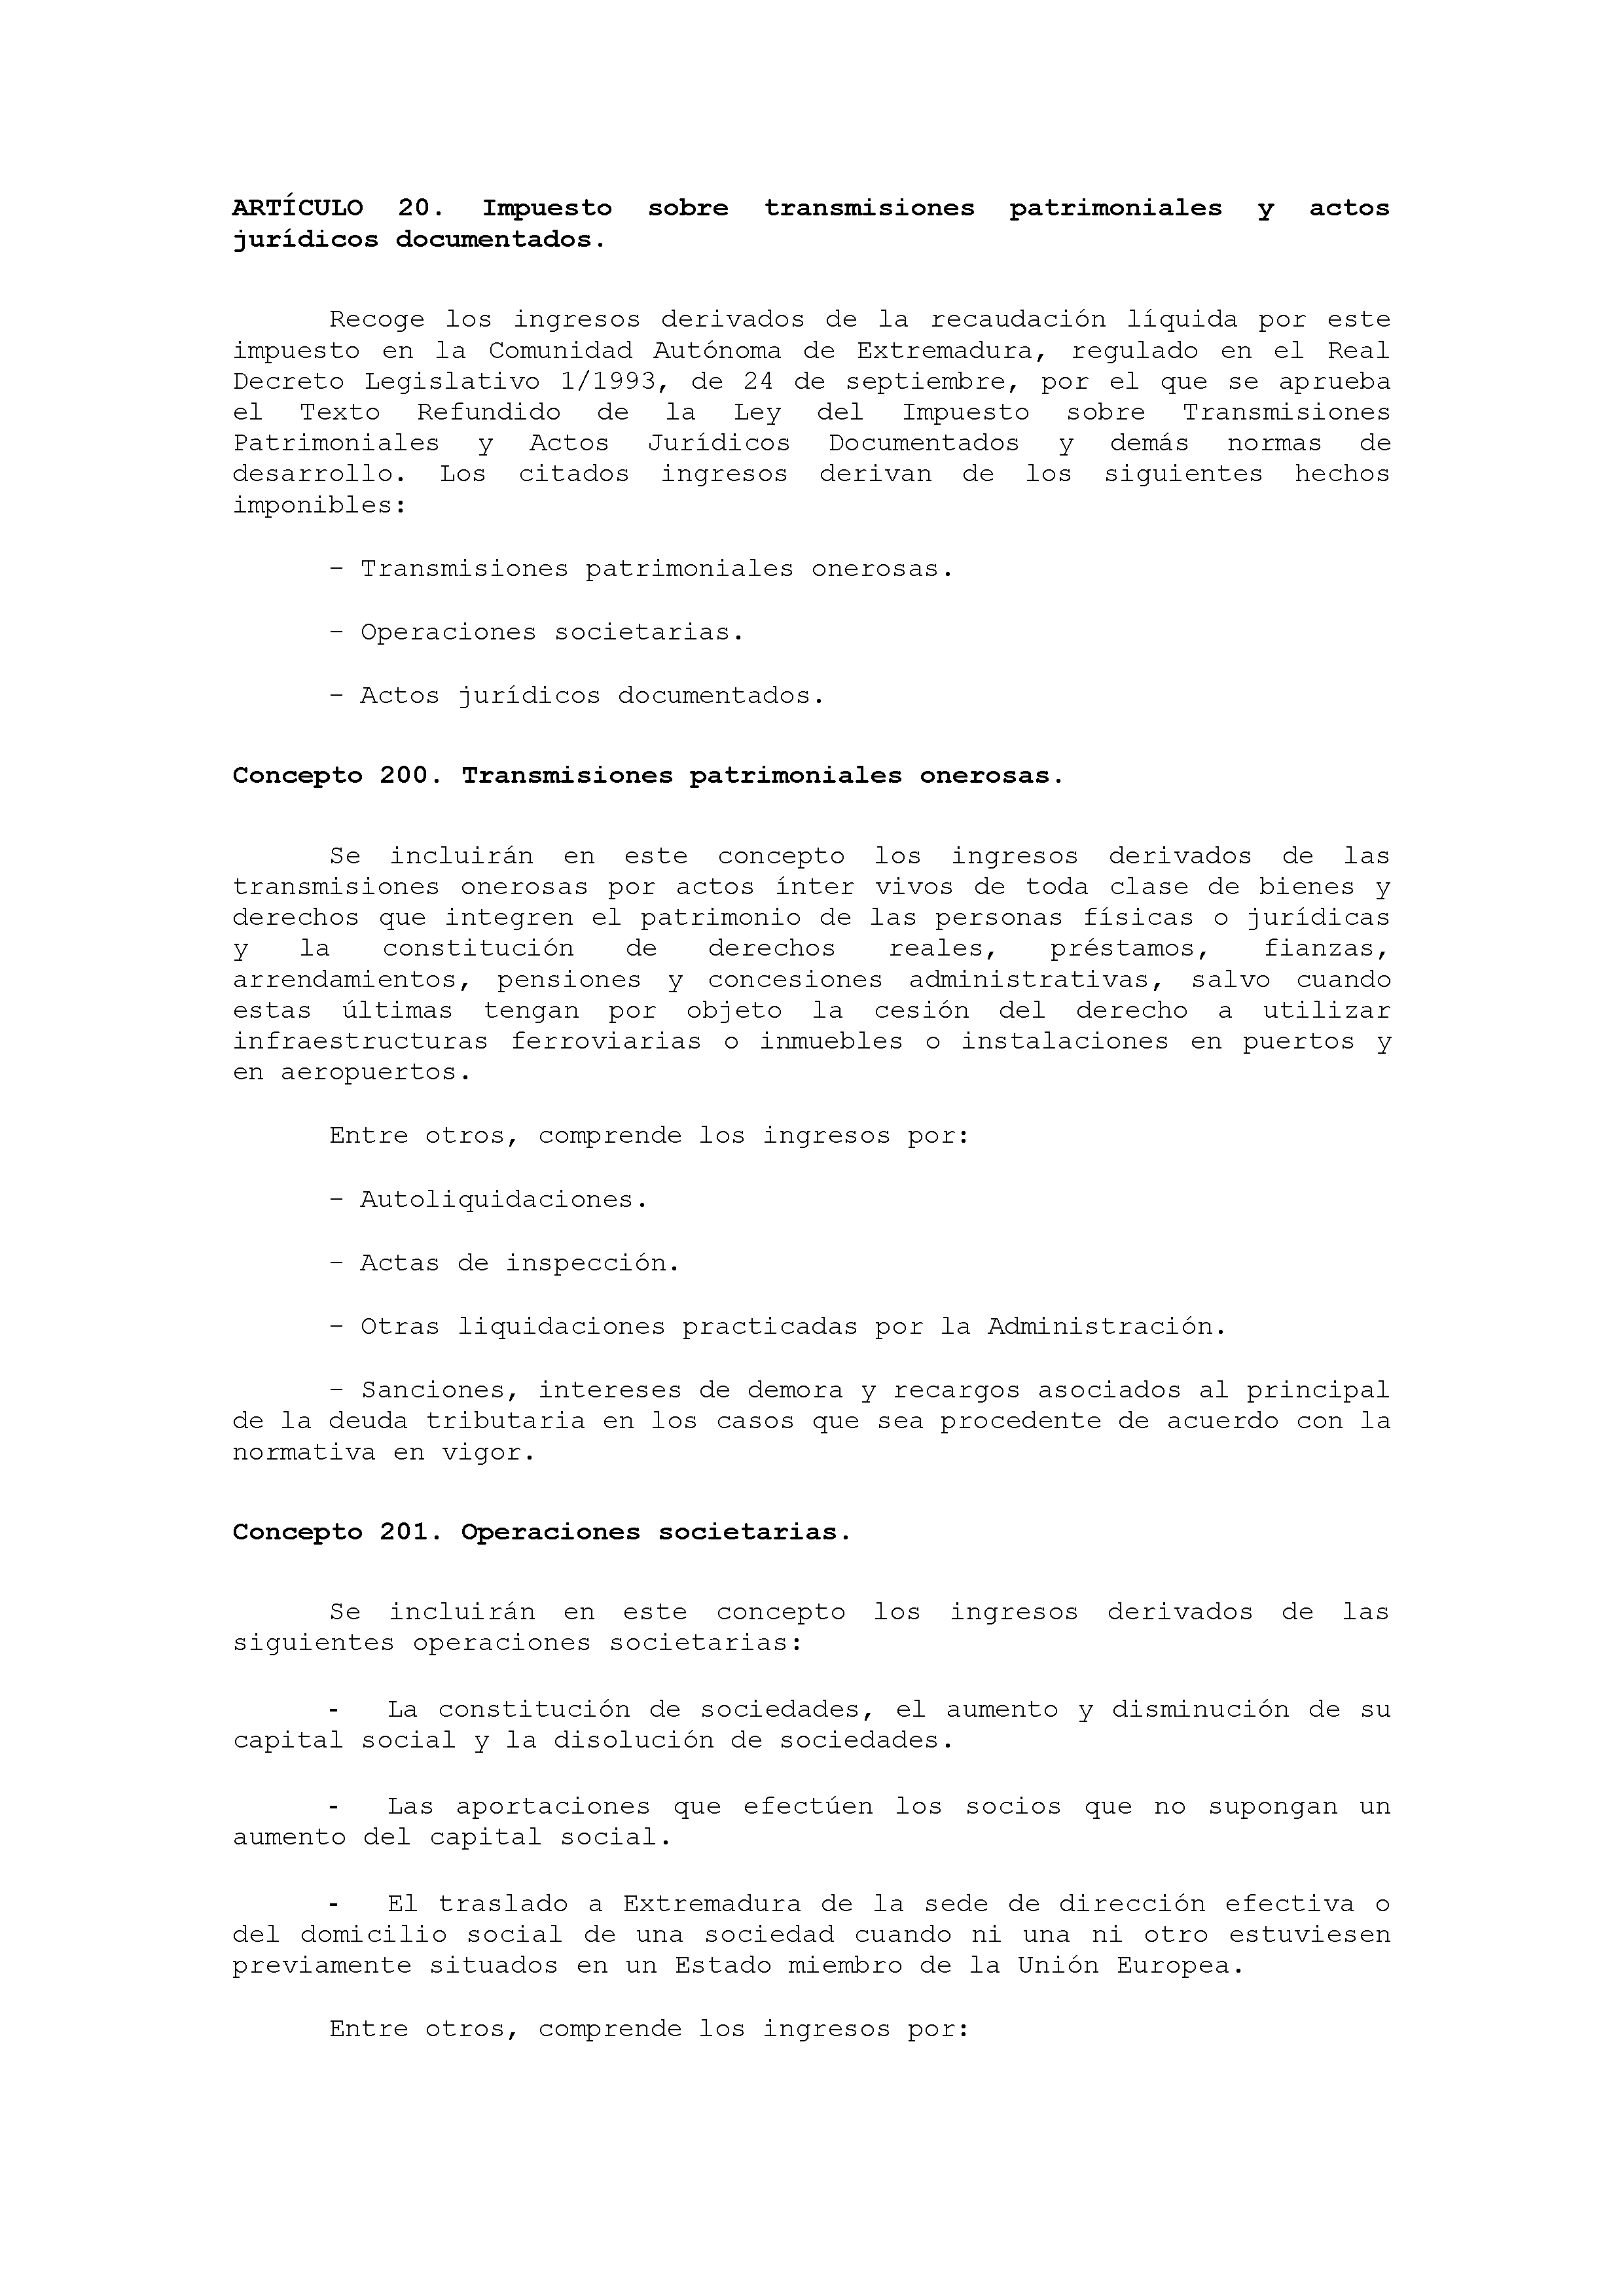 ANEXO VIII CÓDIGO DE LA CLASIFICACIÓN ECONÓMICA DE LOS INGRESOS PÚBLICOS Pag 4